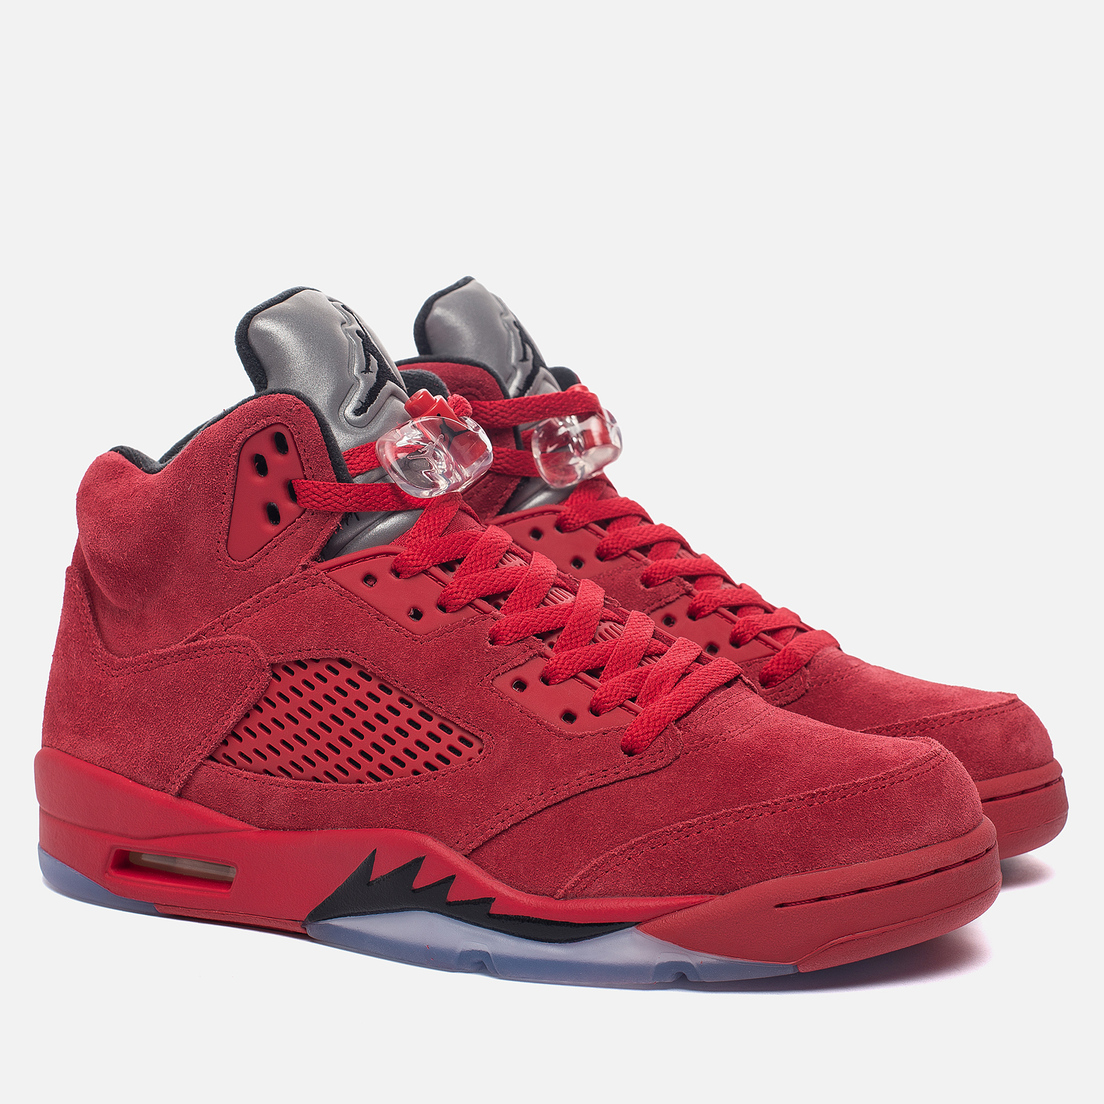 Jordan Мужские кроссовки Air Jordan 5 Red Suede